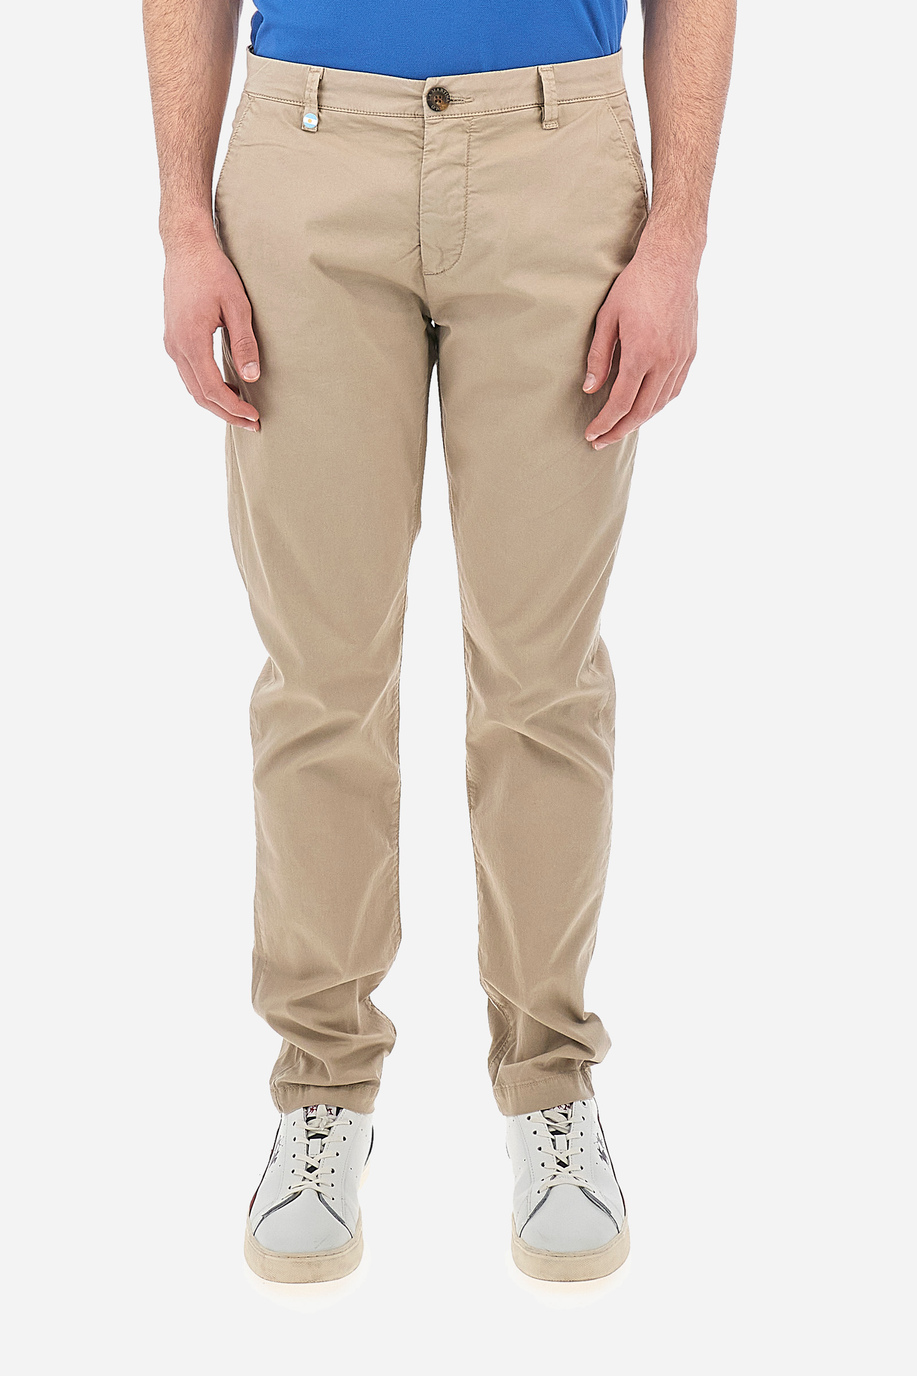 Pantalone da uomo in cotone chino elasticizzato slim fit  -  Siard - Look eleganti per lui | La Martina - Official Online Shop